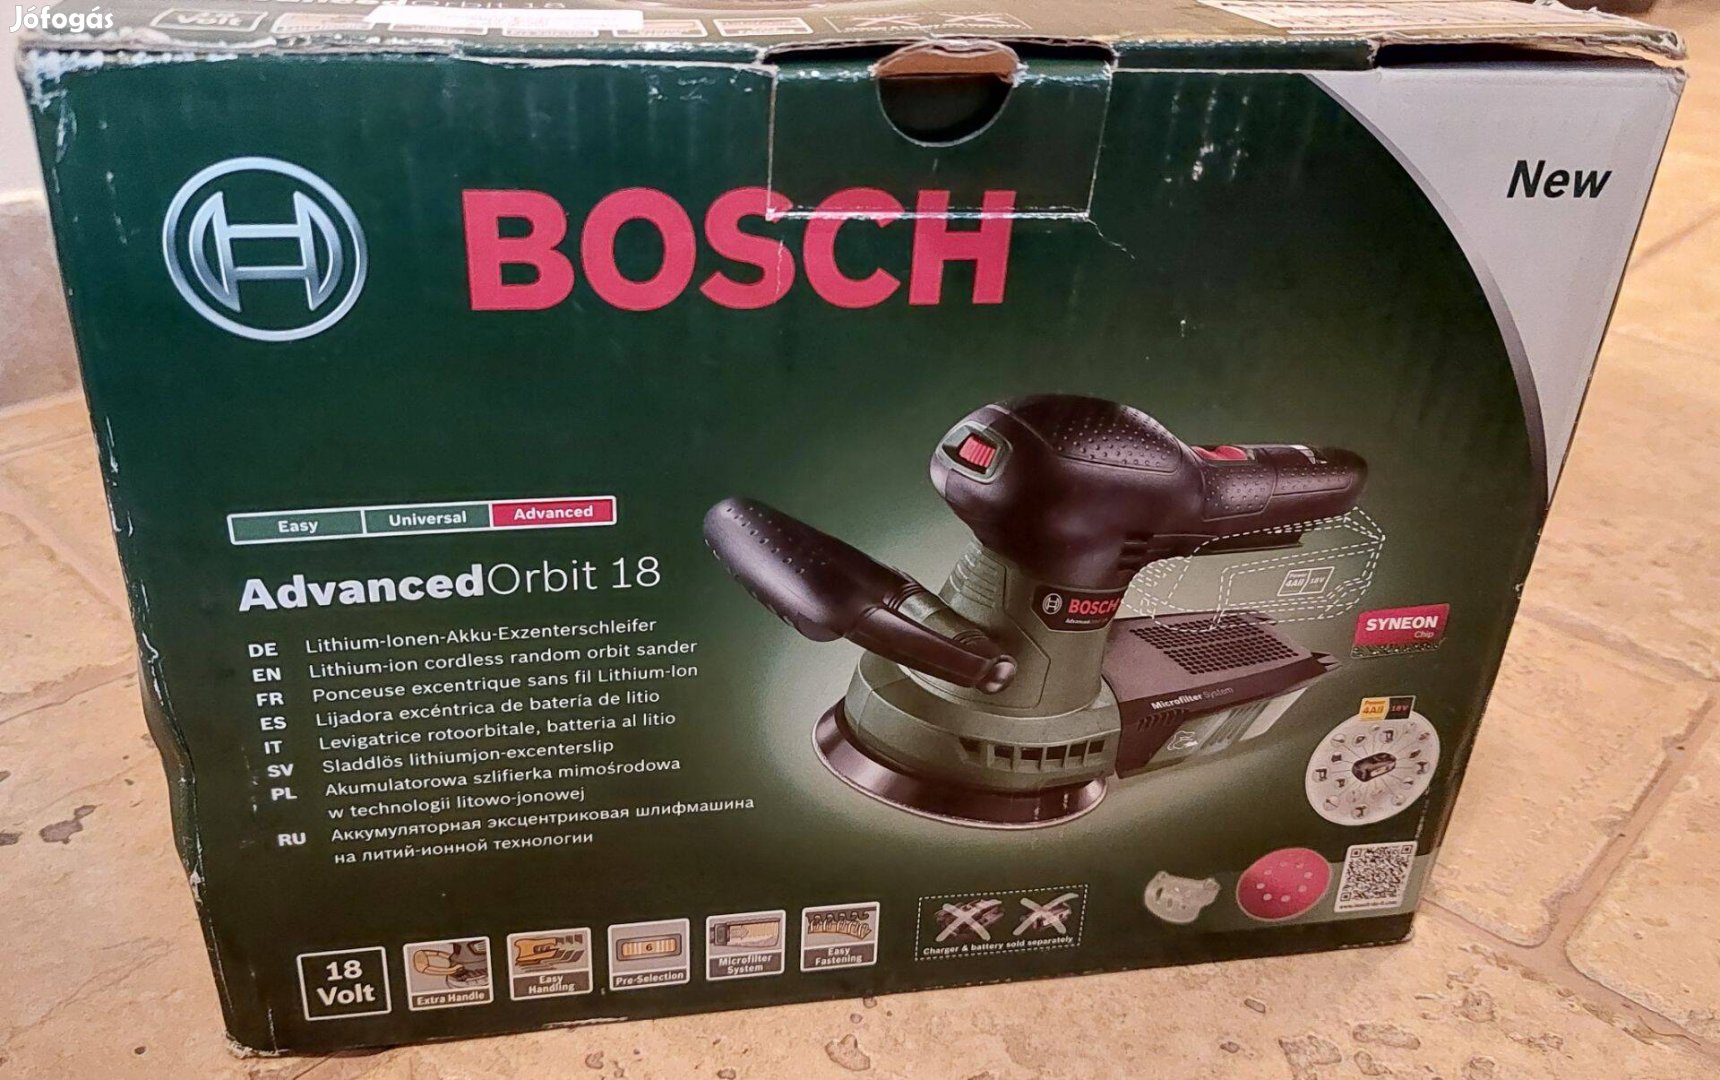 Bosch Advancedorbit 18 akkus, (Új) excenter csiszoló, polírozó